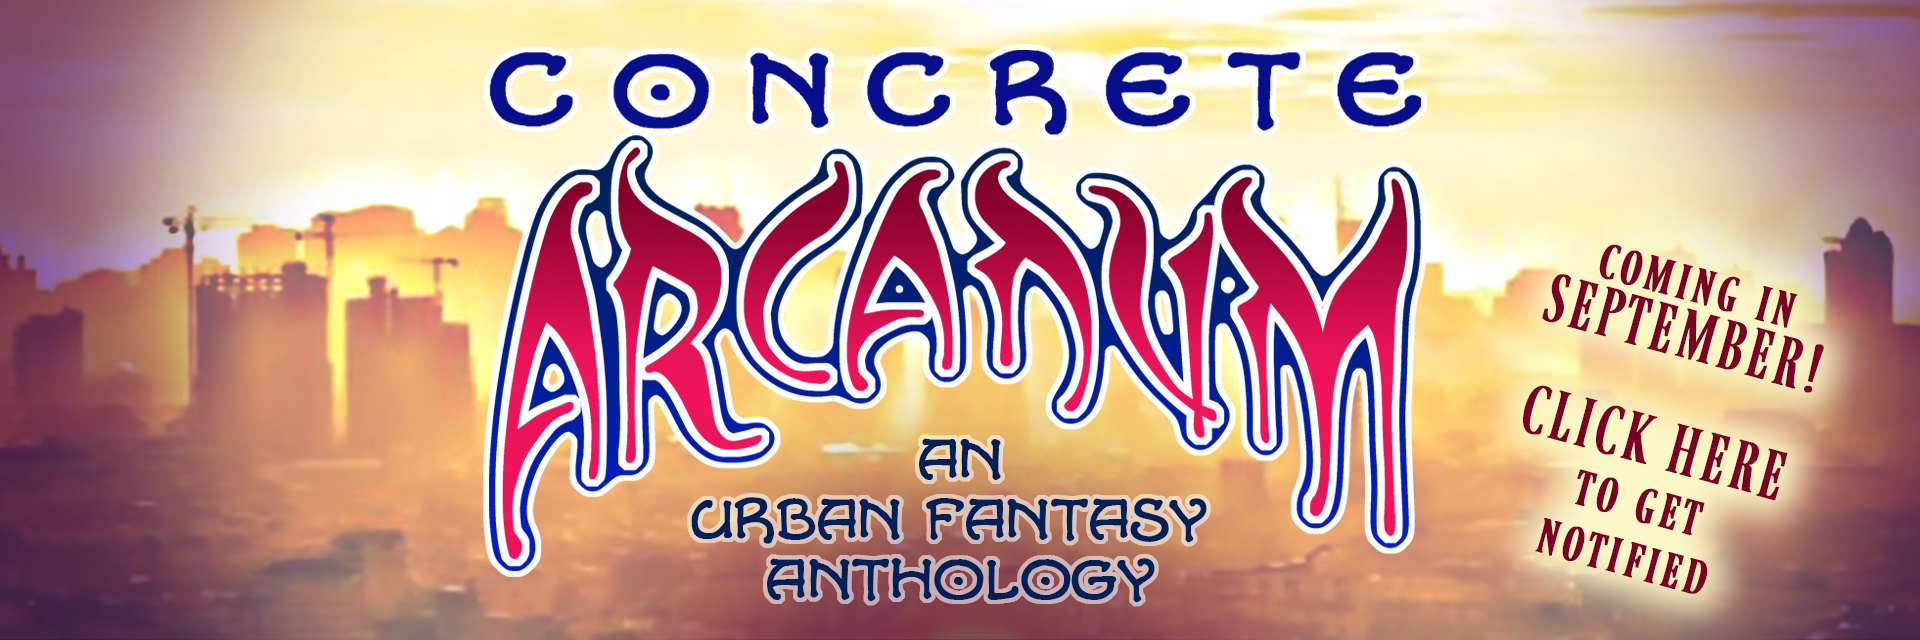 Concrete-Arcanum-Website-Banner